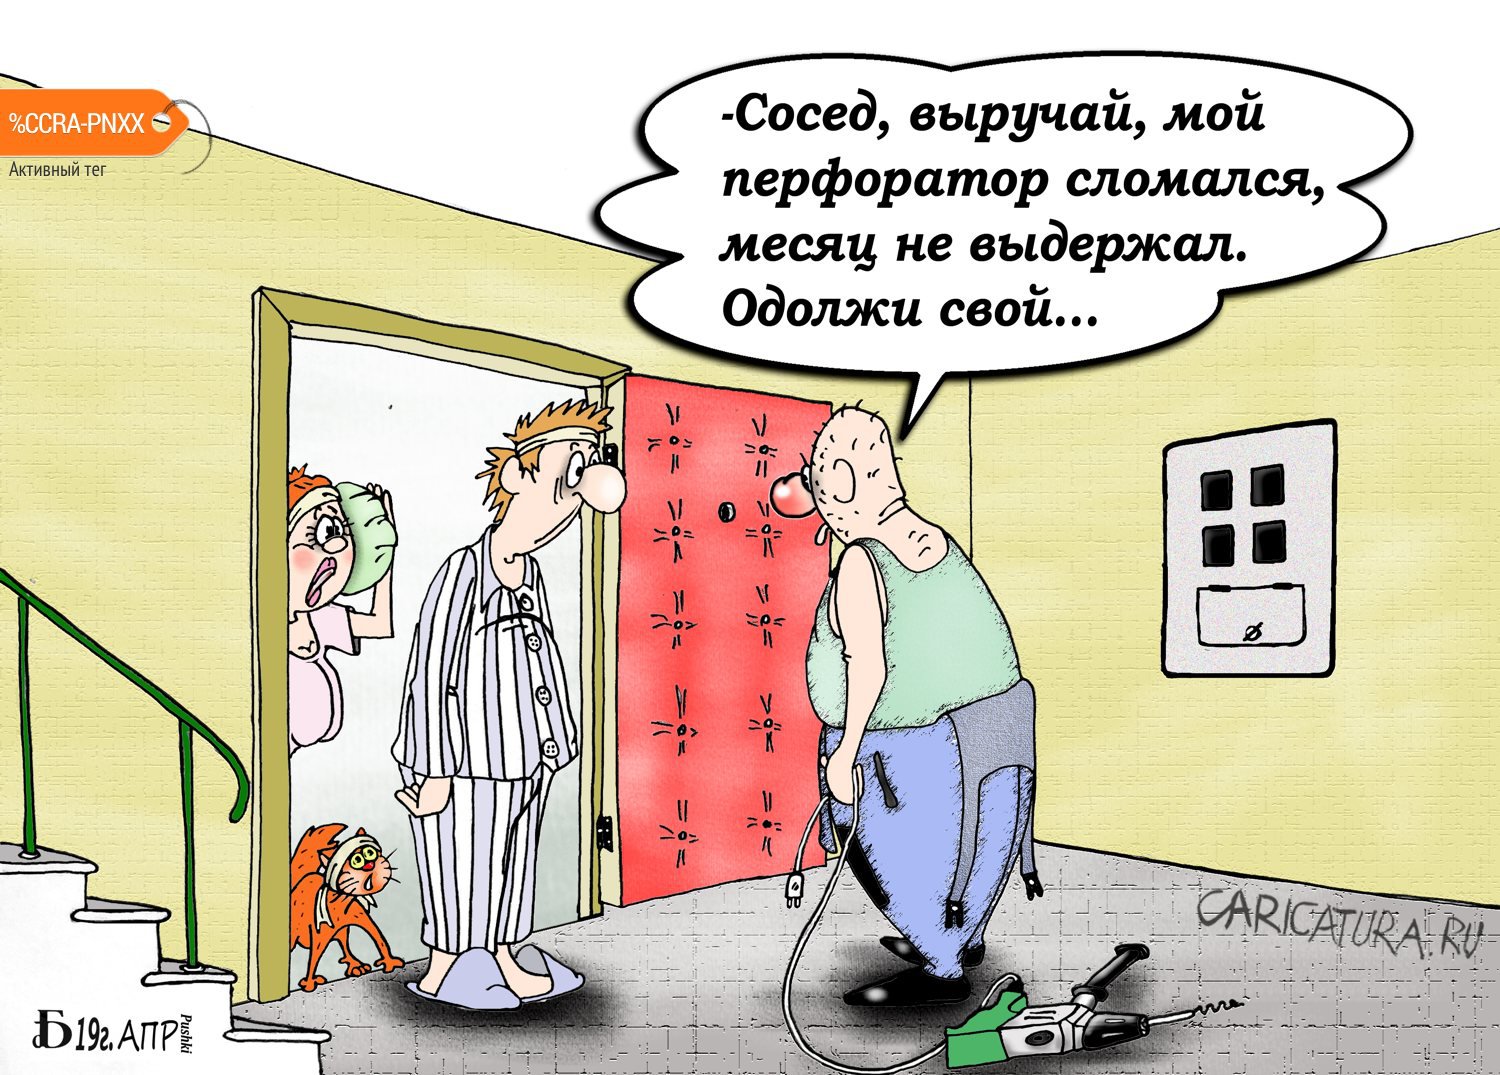 Карикатура "Про перфоратор", Борис Демин